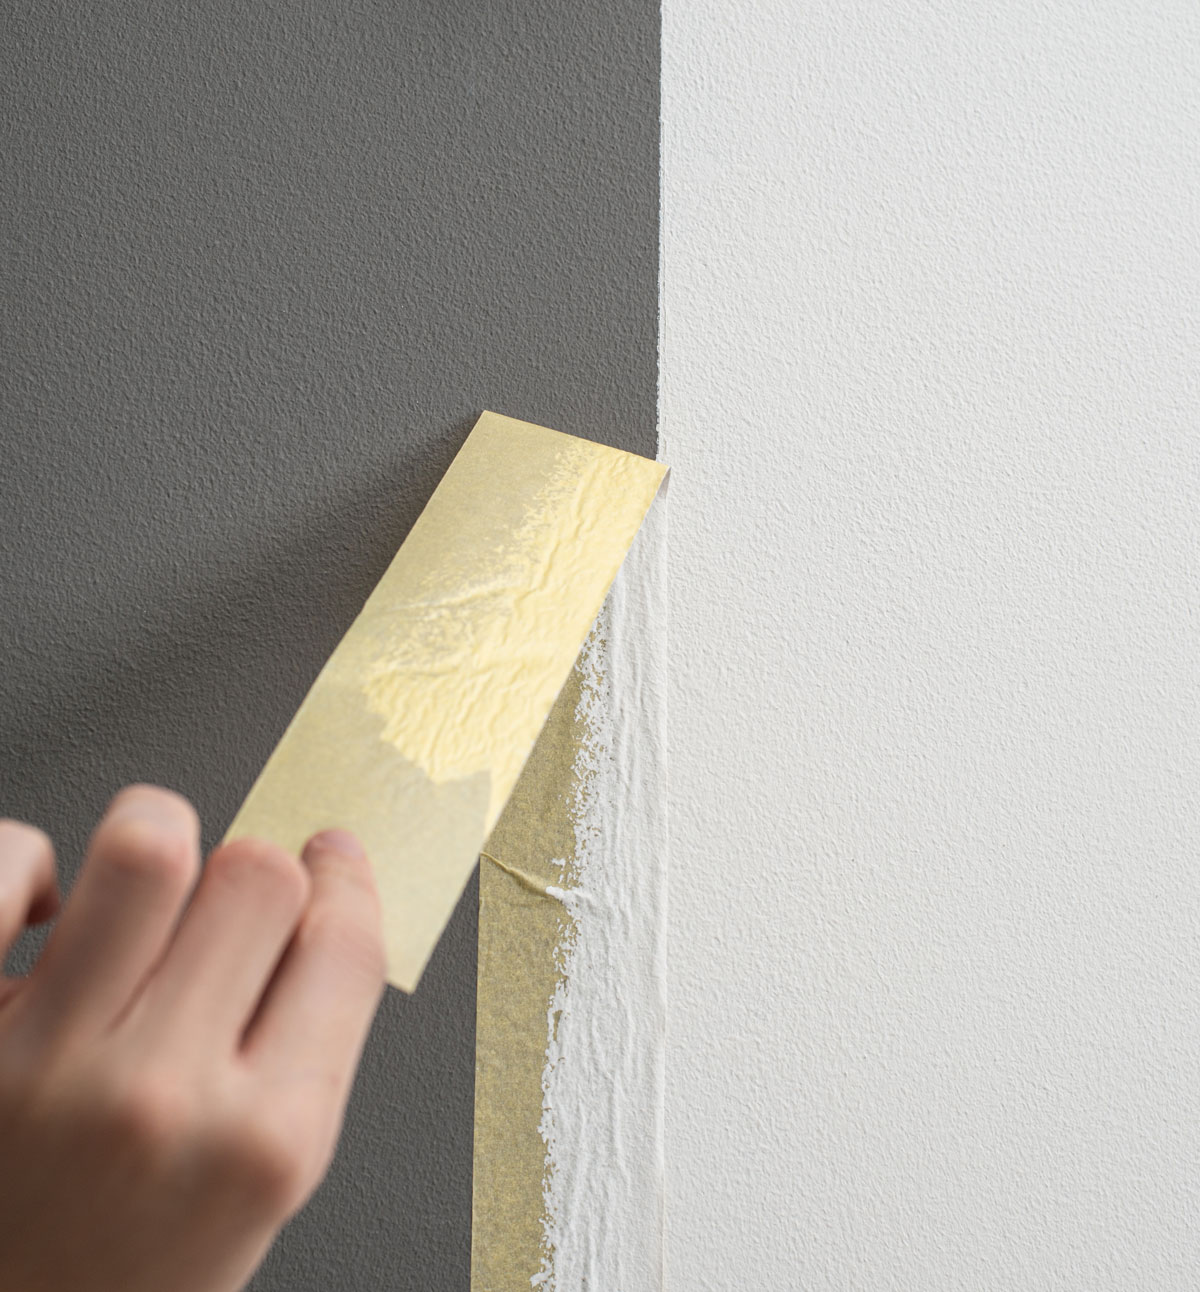 odliepanie krycej pásky po maľovaní steny